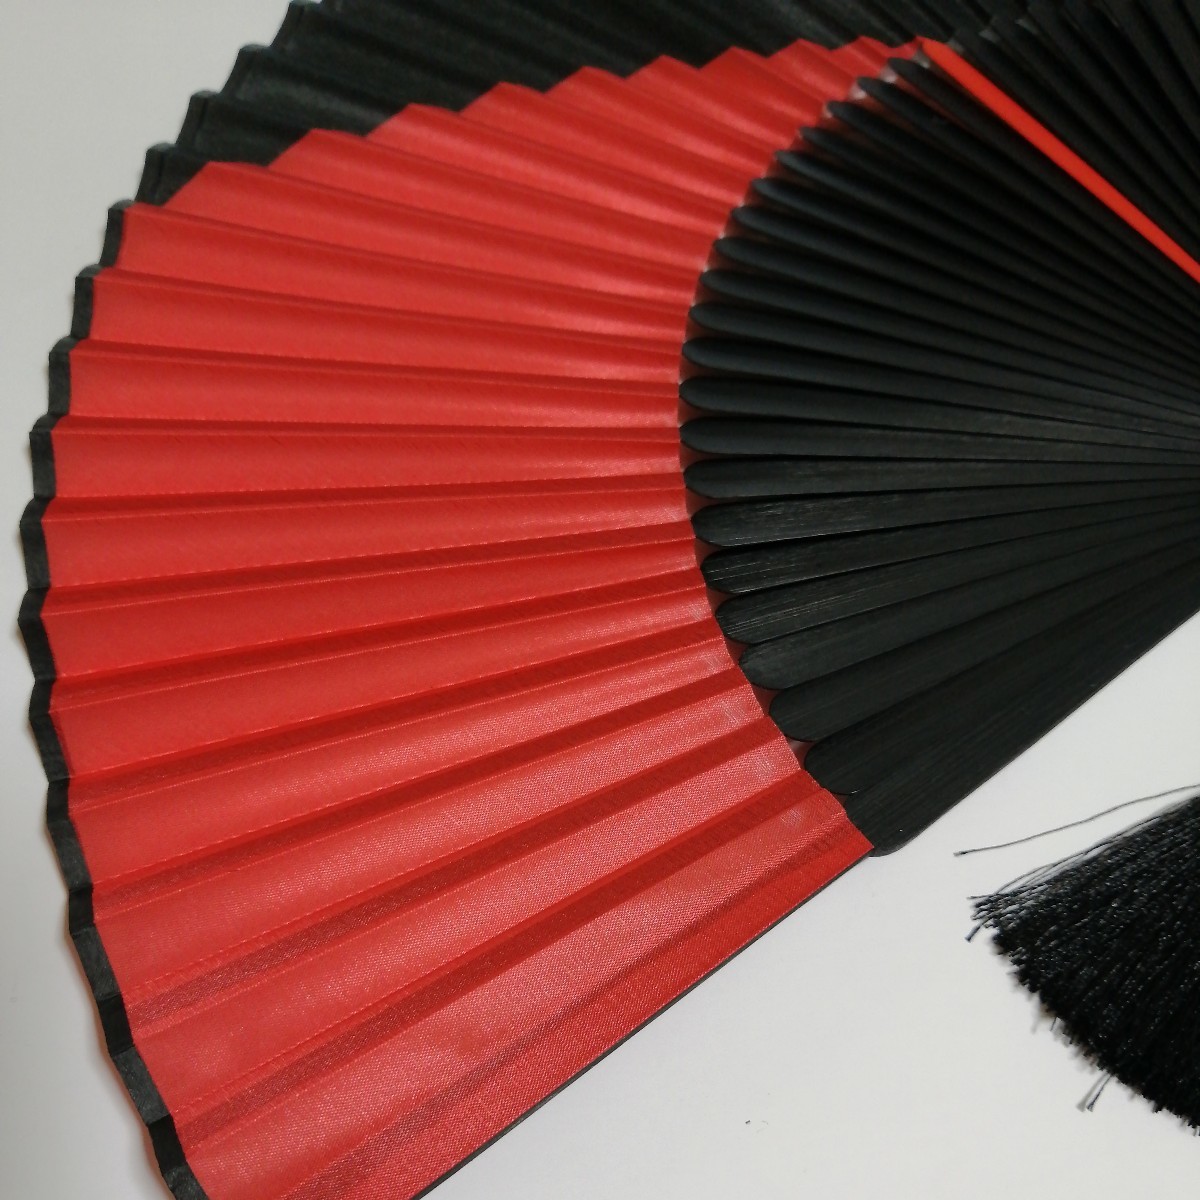  fan red black 